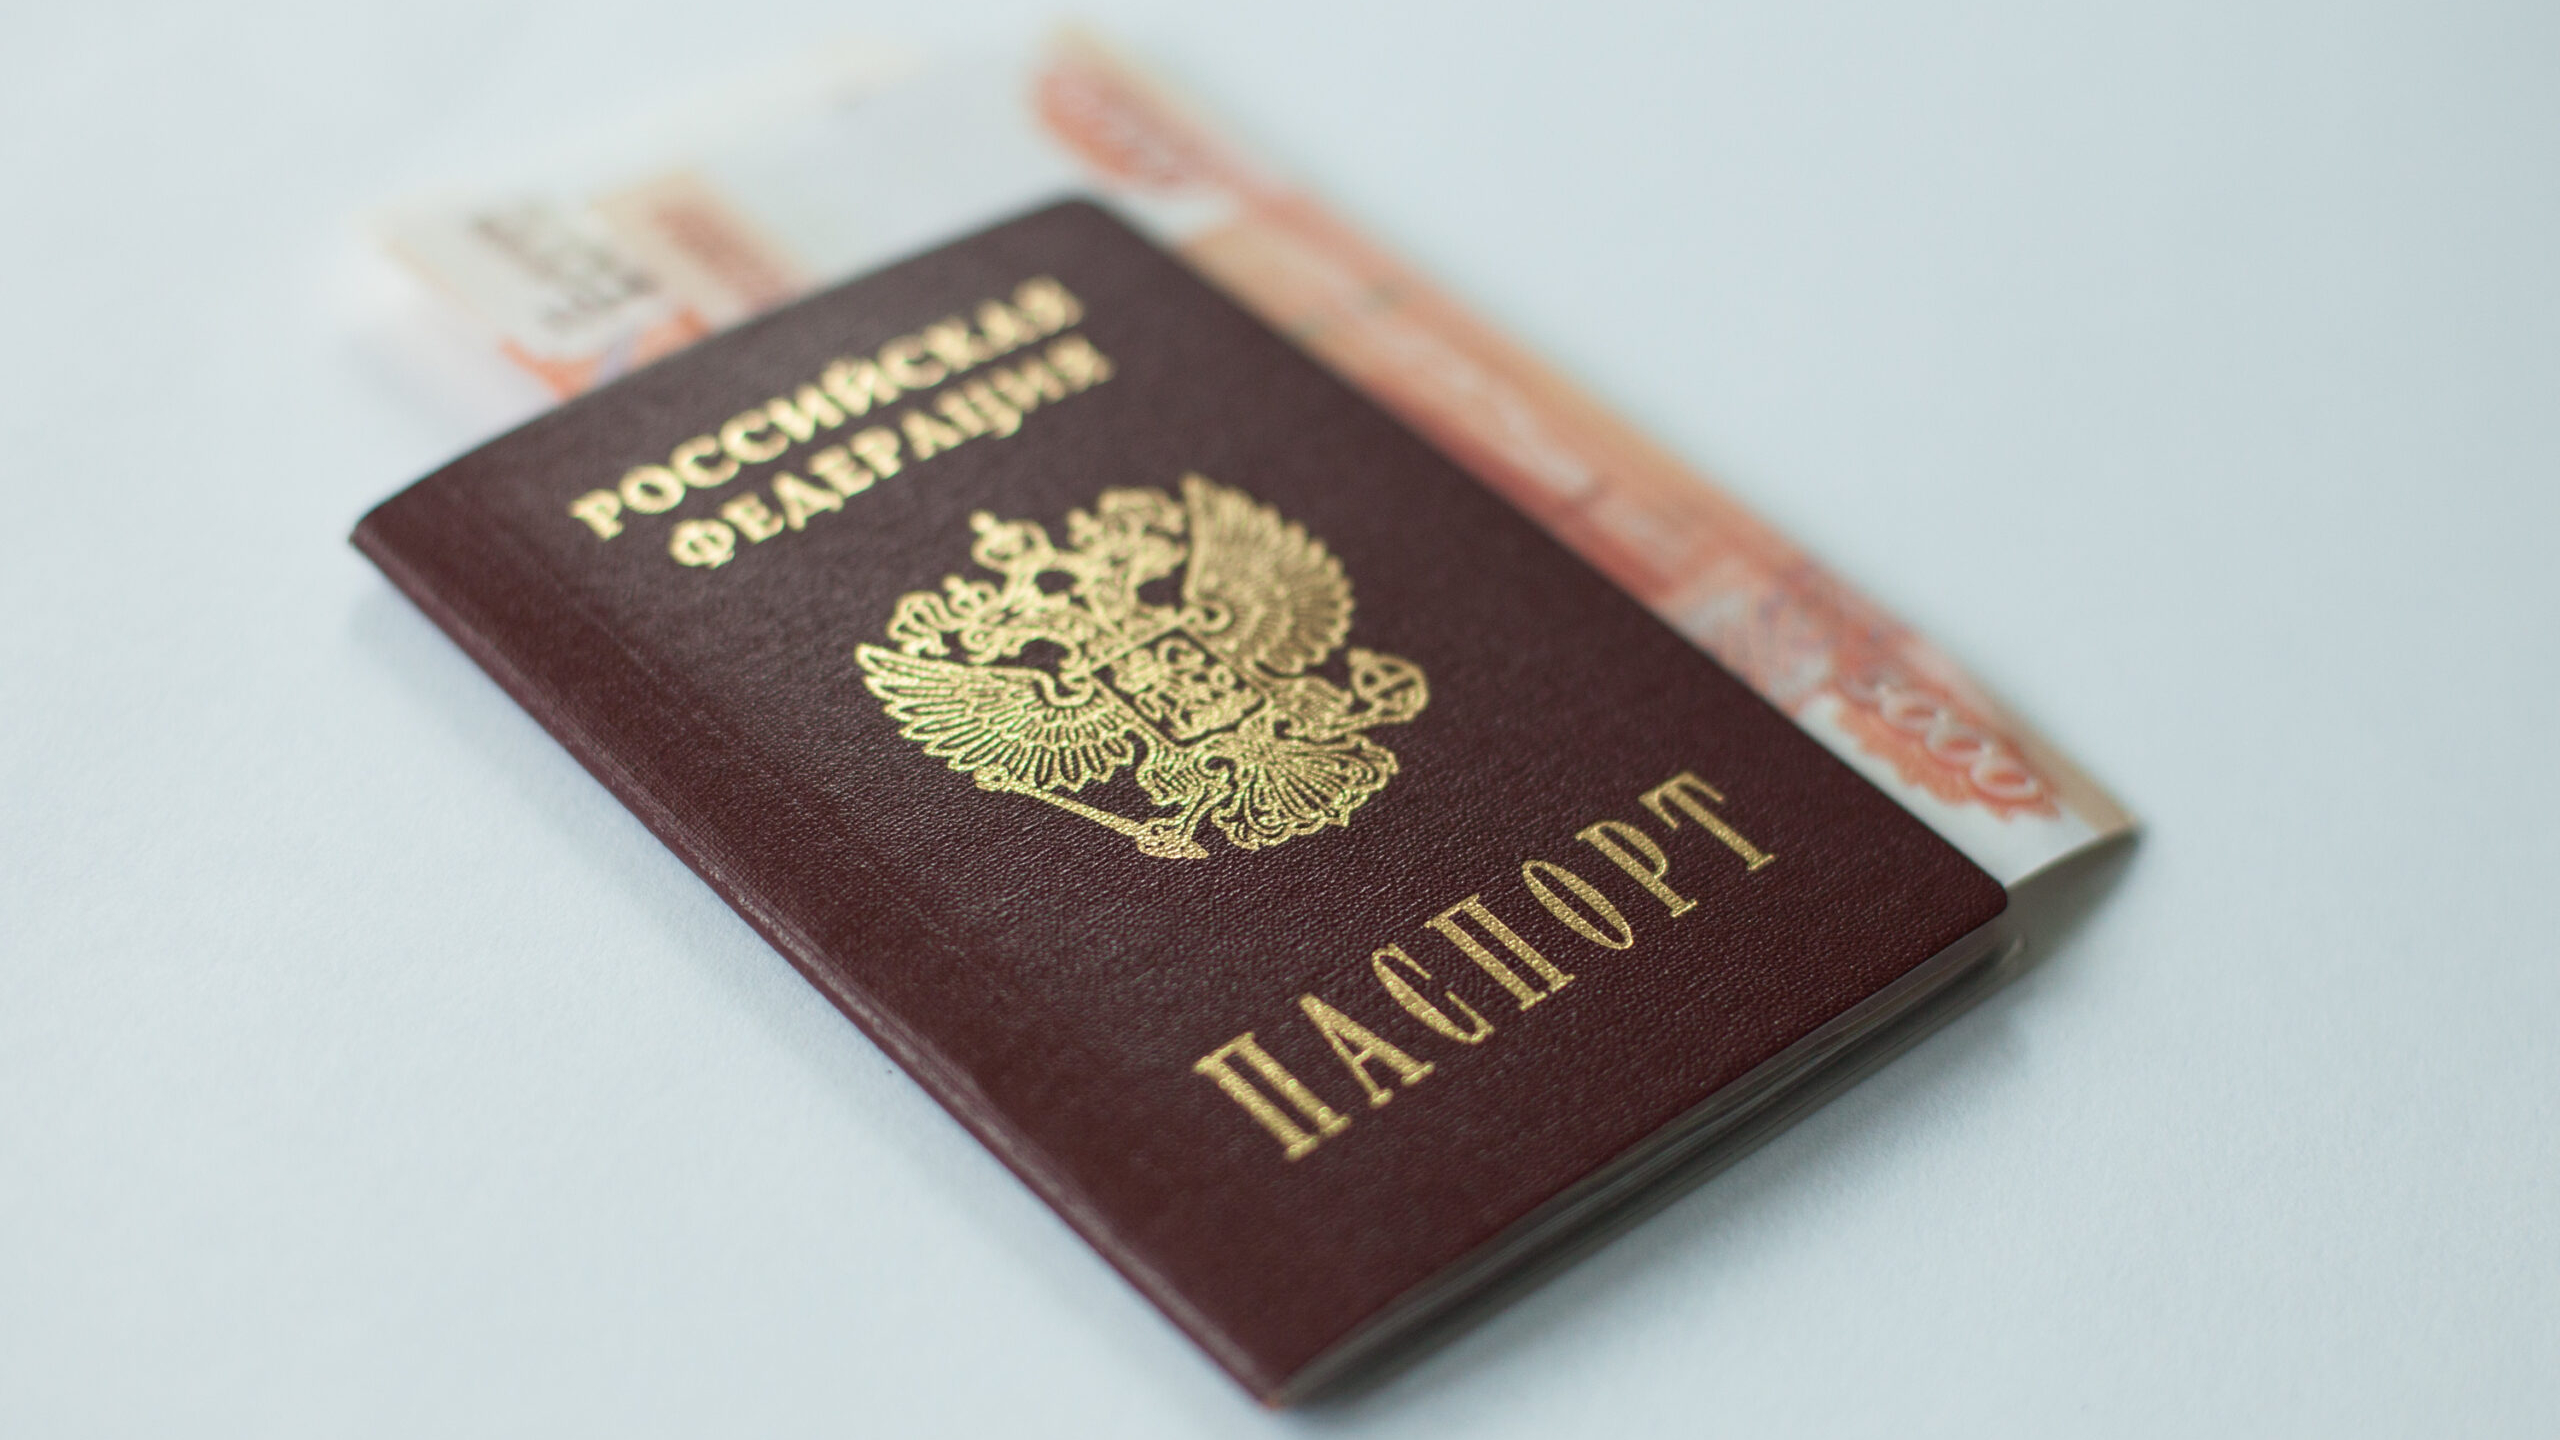 Порог идентификации граждан РФ при финансовых операциях может составить 40 тыс. руб